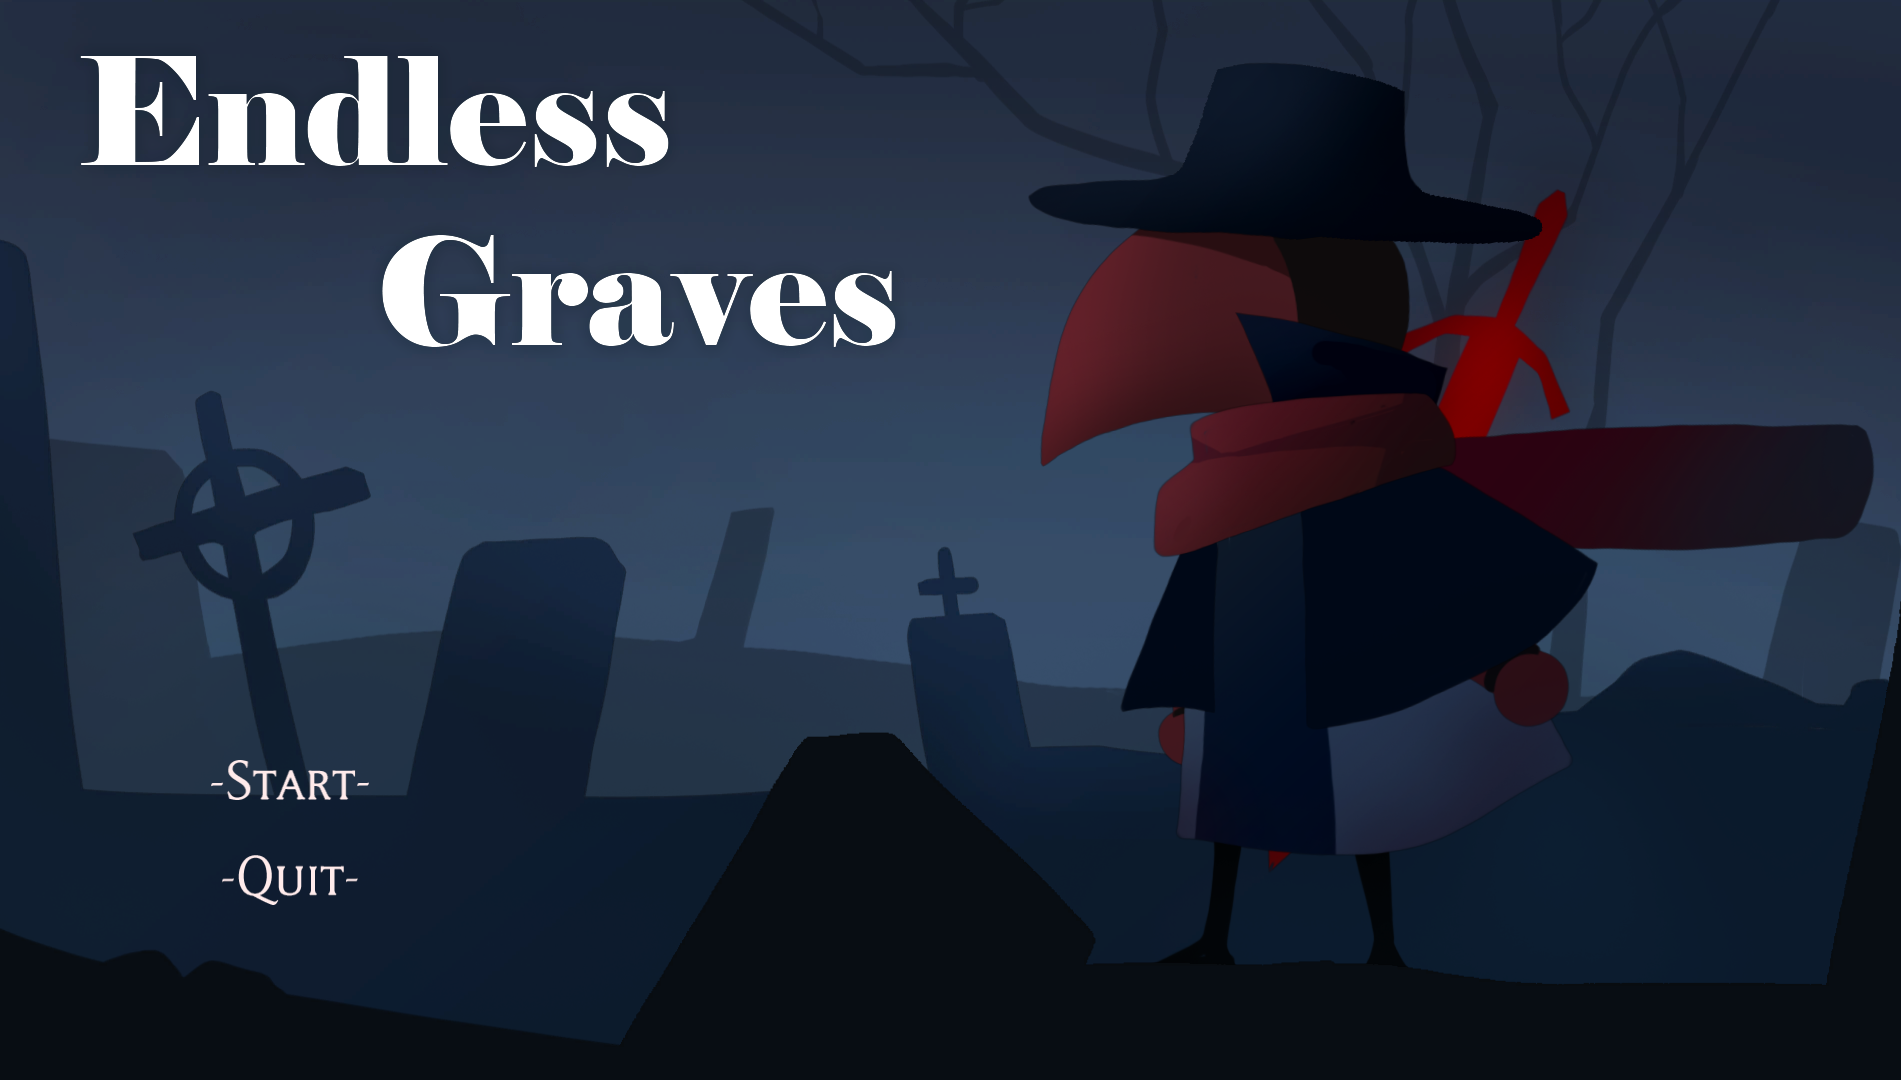 Endless graves